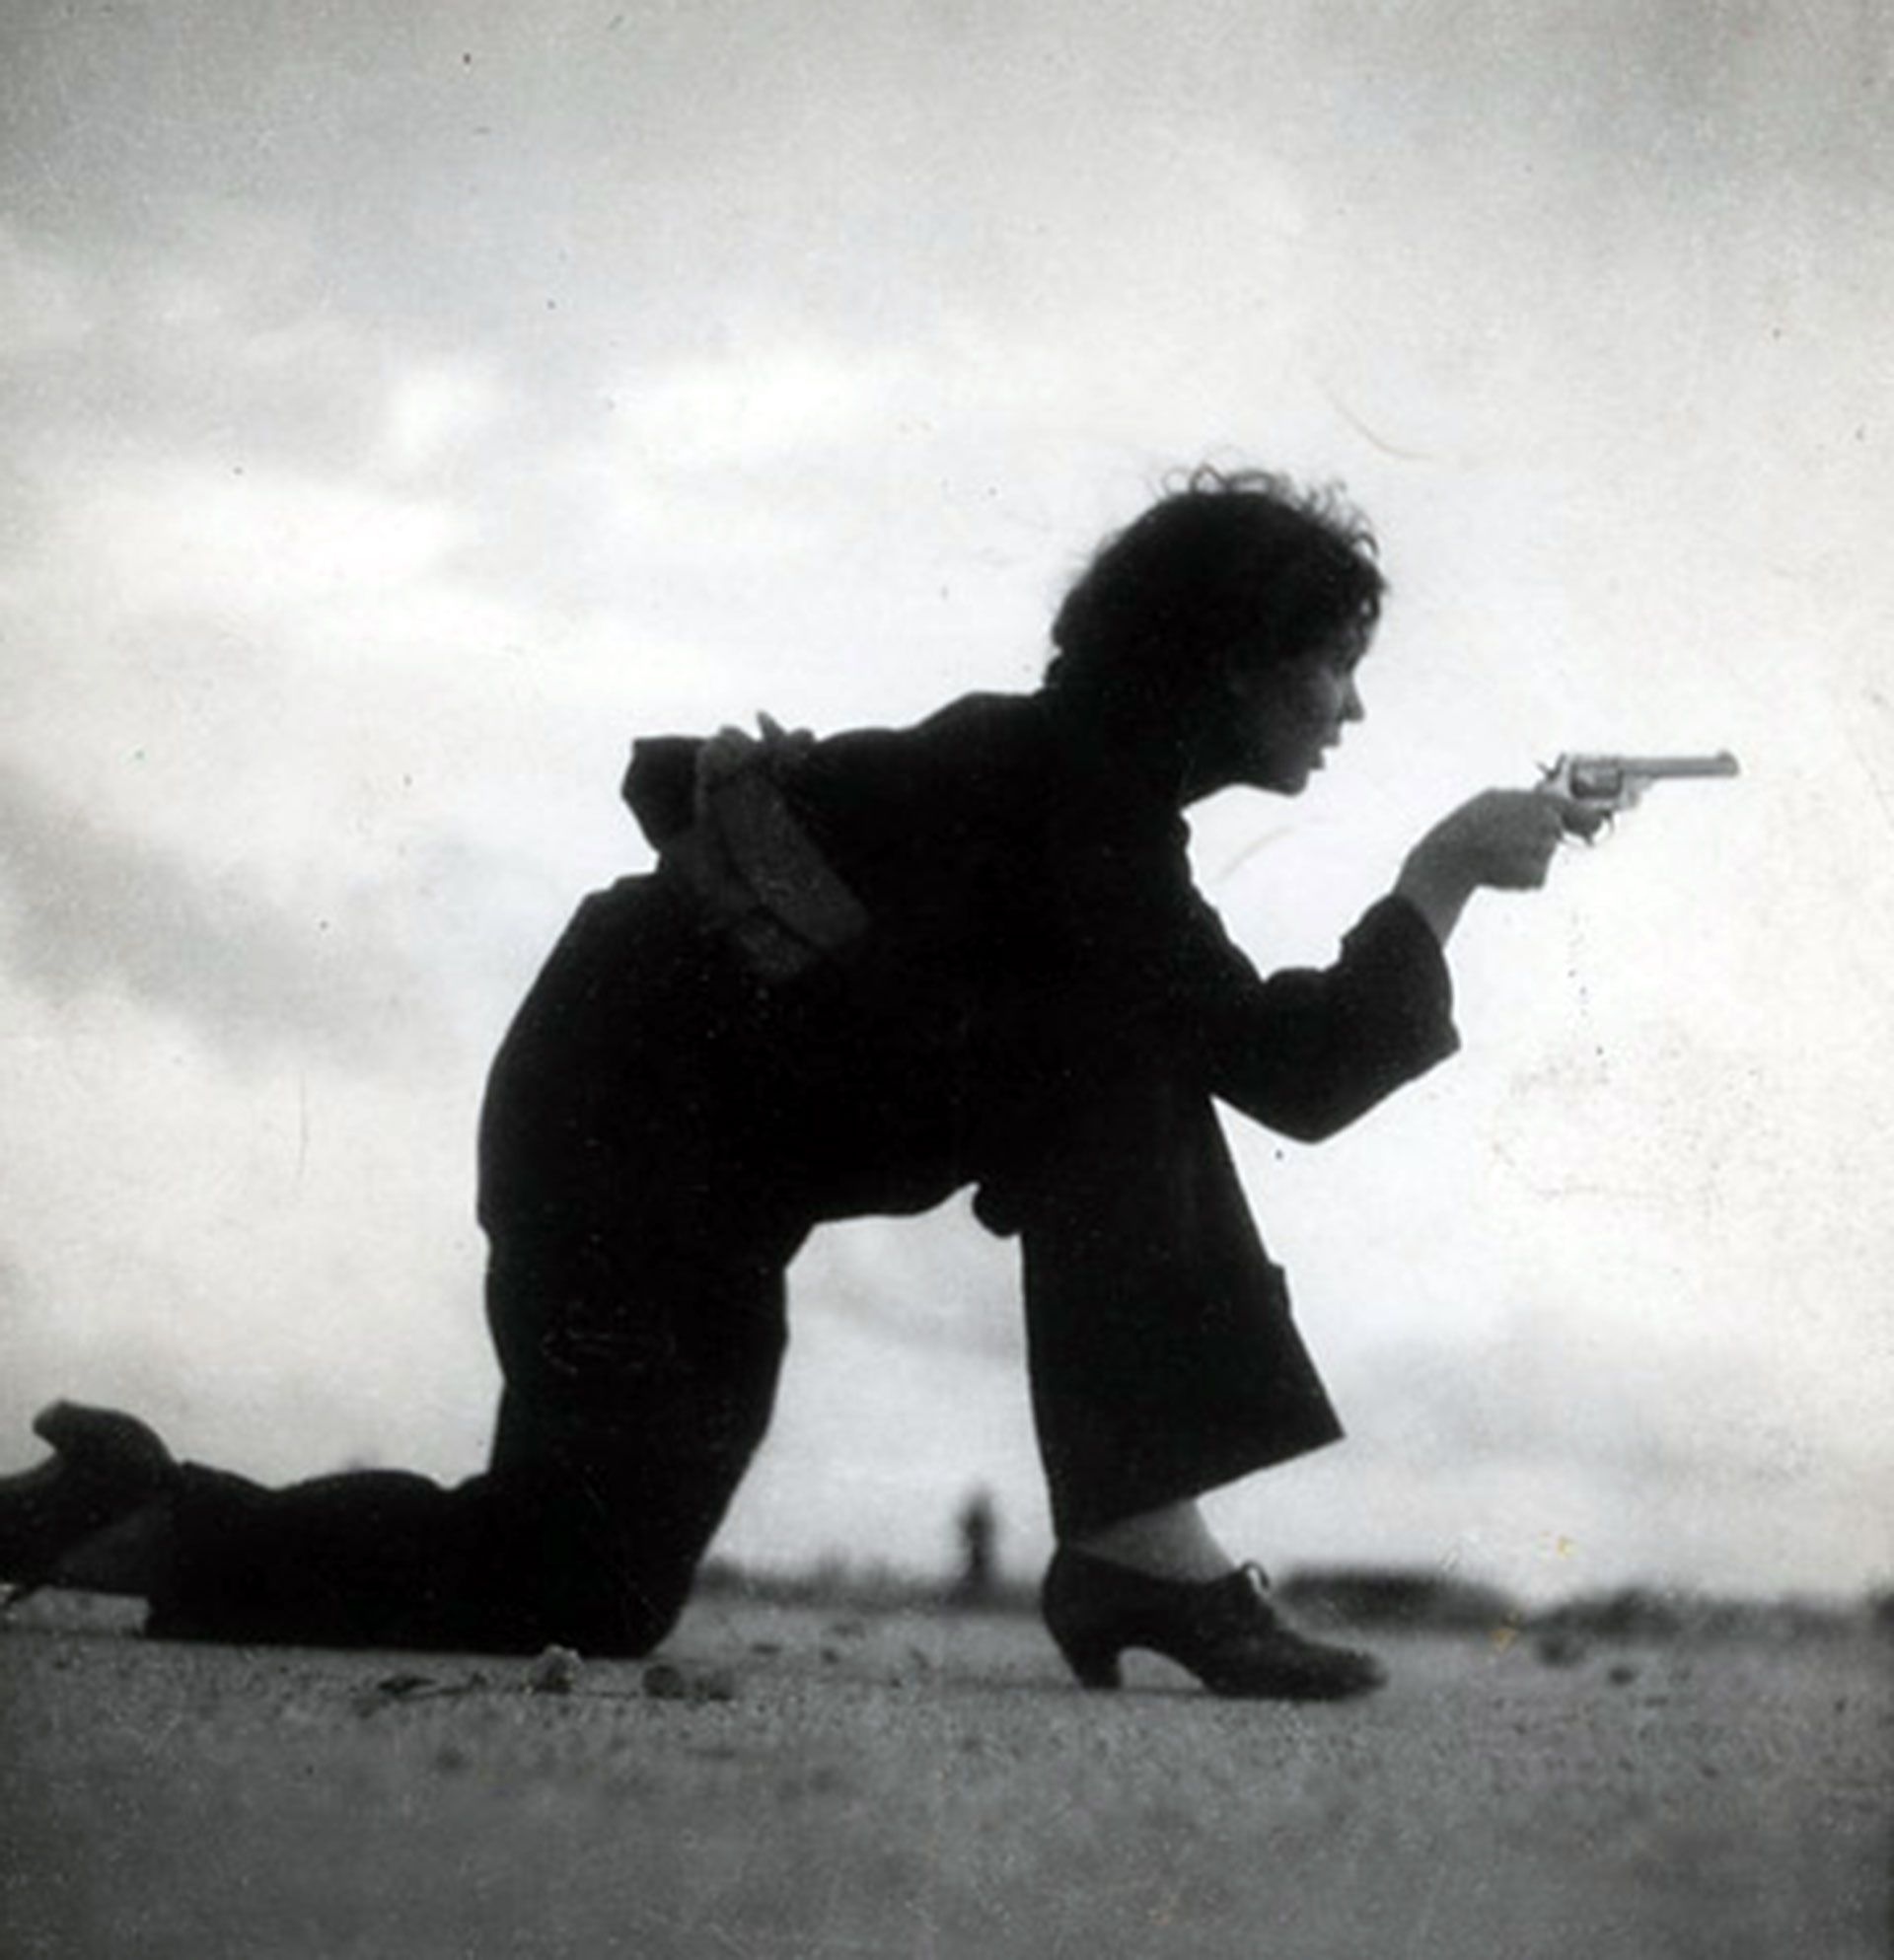 Entrenamiento de una miliciana republicana fotografiado por Gerda Taro durante la Guerra Civil Española